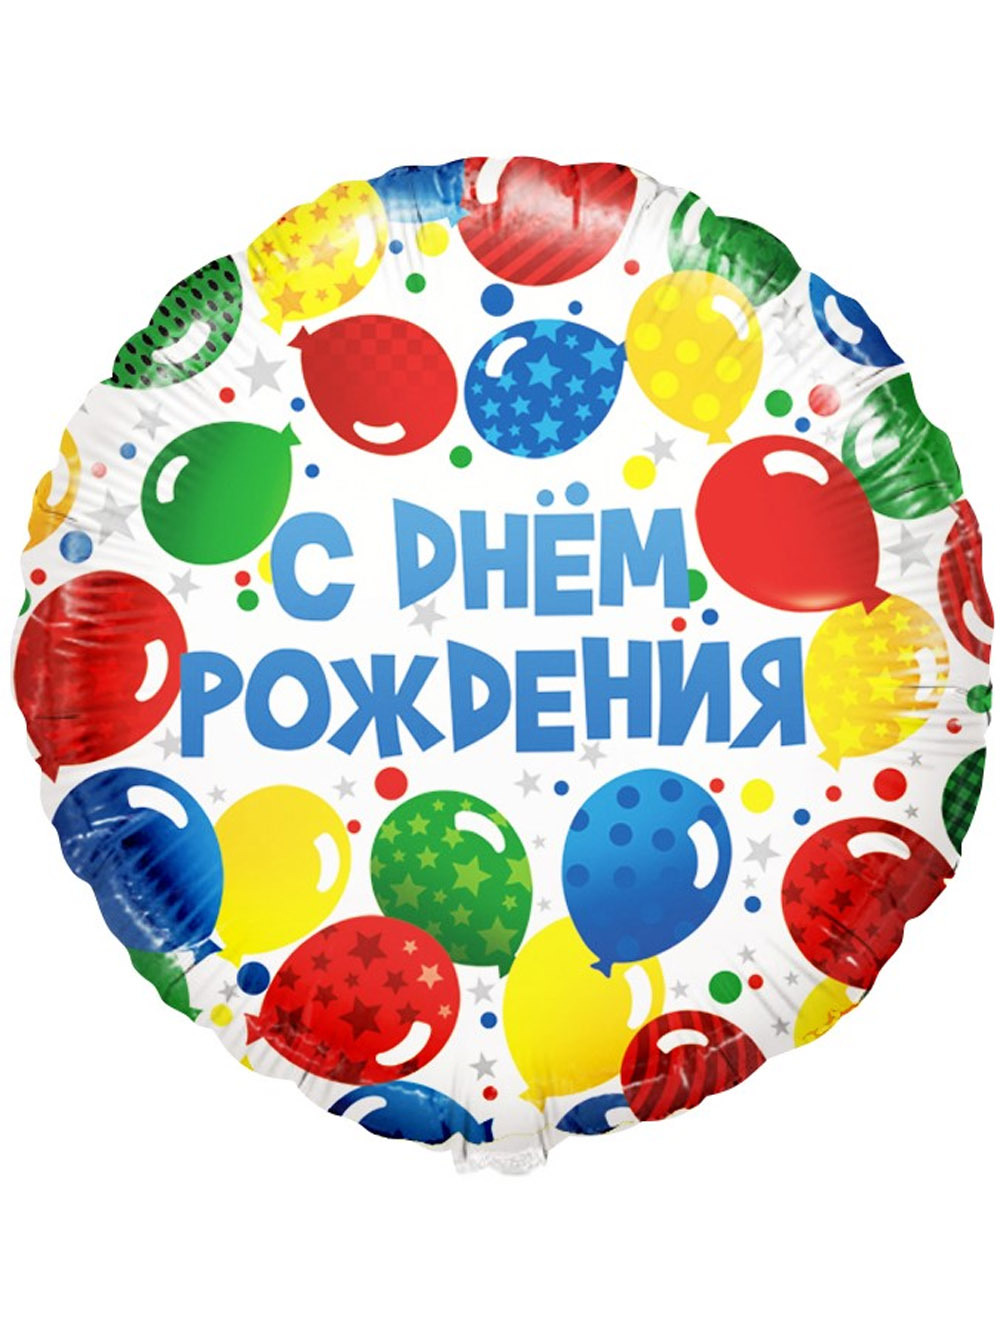 Дни рождения круглый год. Шар круг с днем рождения. Шар фольга круглый с днем рождения. Разноцветные шарики на день рождения. Шар фольга круг с днем рождения.